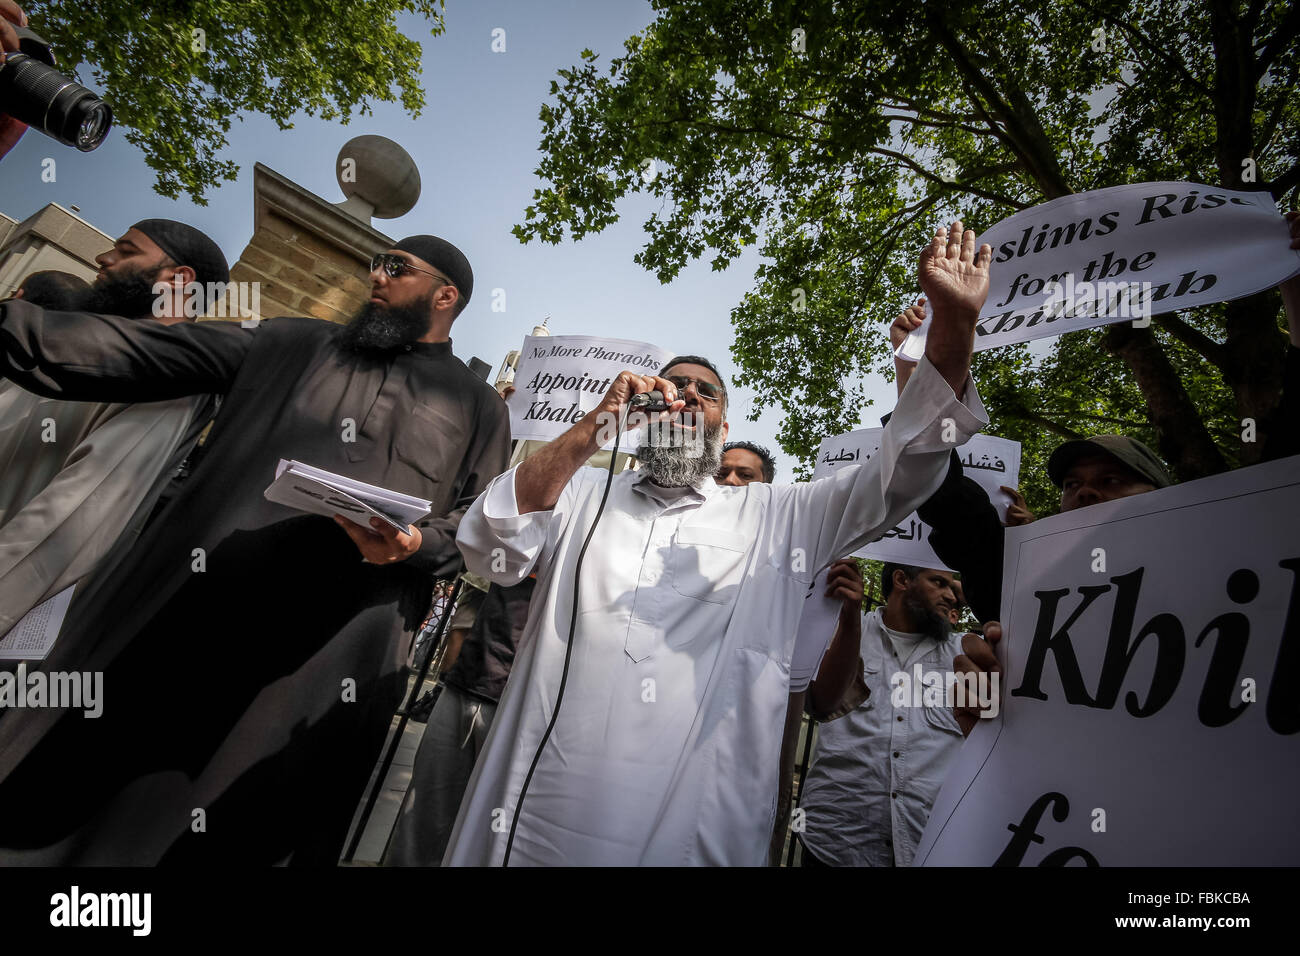 Datei-IMAGES: London, UK. 12. Juli 2013. Datei-Images von 07.12.2013: Mohammed Reza Haque (links, mit Sonnenbrille), 35, bekannt als die "Riese" im Verdacht, den zweiten britischen islamischen Extremisten werden gedacht, um unter einem Team der Henker, die tot fünf "Spione" in Syrien Anfang dieses Jahres erschossen. Siehe hier im Jahr 2013 vor Regents Park Moschee während eines islamistischen Protest organisiert durch radikale Kleriker Anjem Choudary (Mitte mit mic) Credit: Guy Corbishley/Alamy Live News Stockfoto